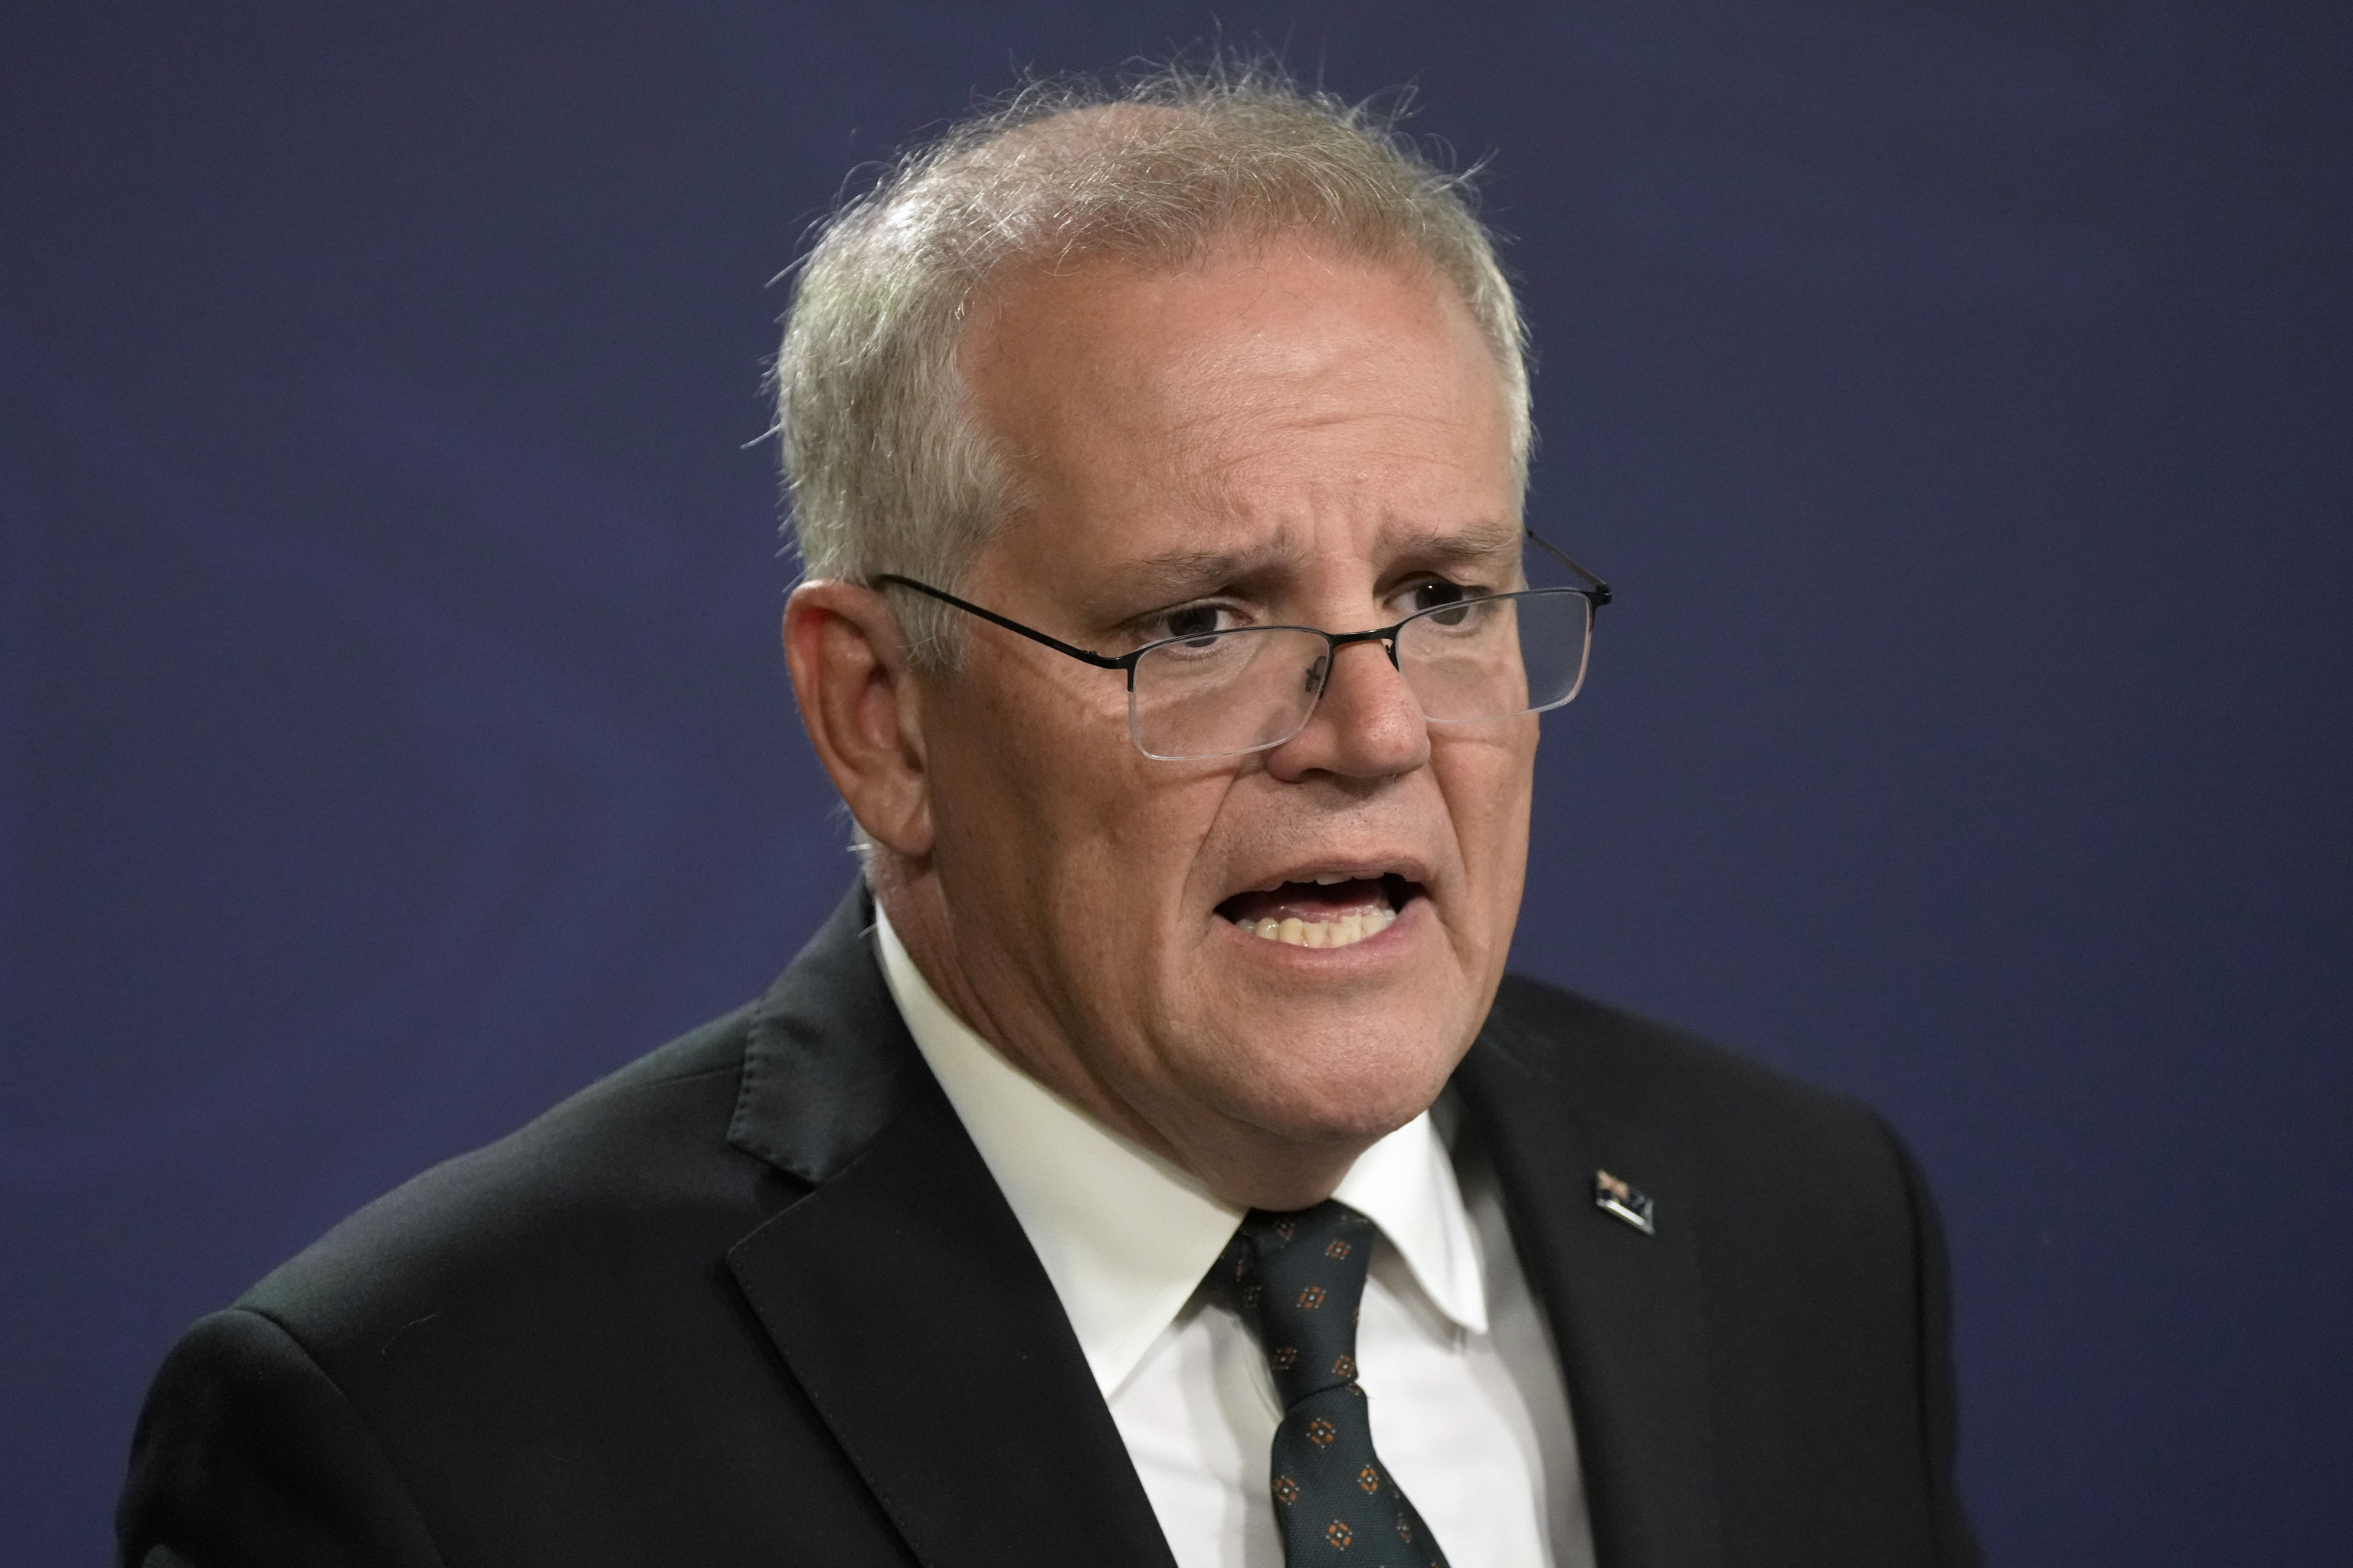 El ex primer ministro australiano asumió en secreto cinco ministerios durante la pandemia